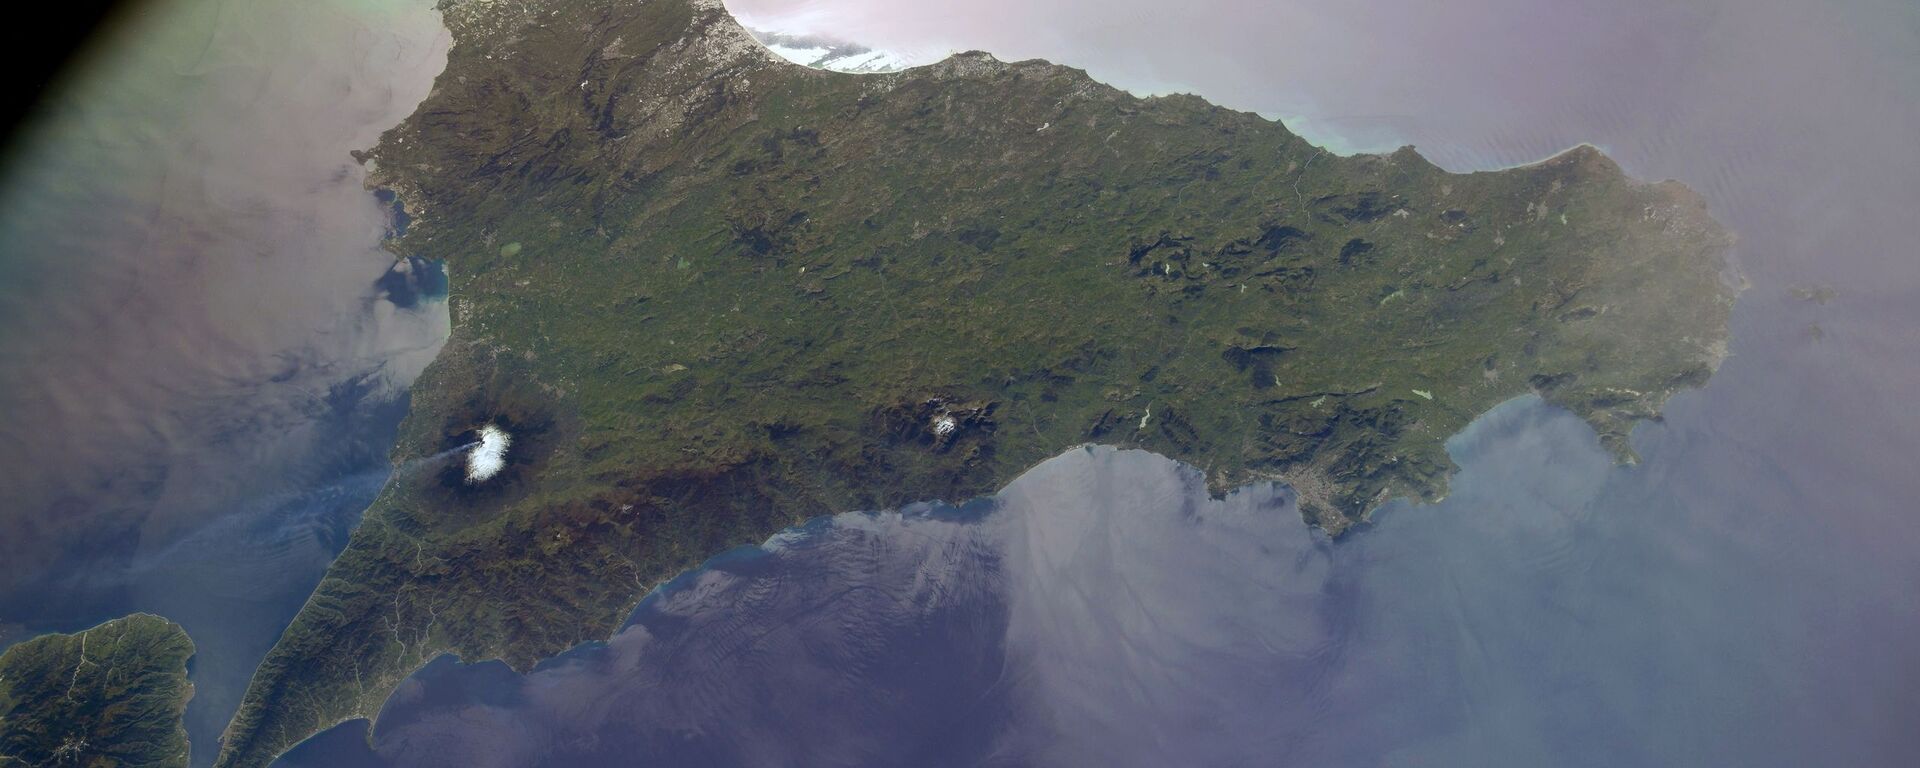 Вид из космоса на вулкан Этна на Сицилии, снятый российским космонавтом Сергеем Кудь-Сверчковым с МКС - Sputnik Абхазия, 1920, 20.05.2021